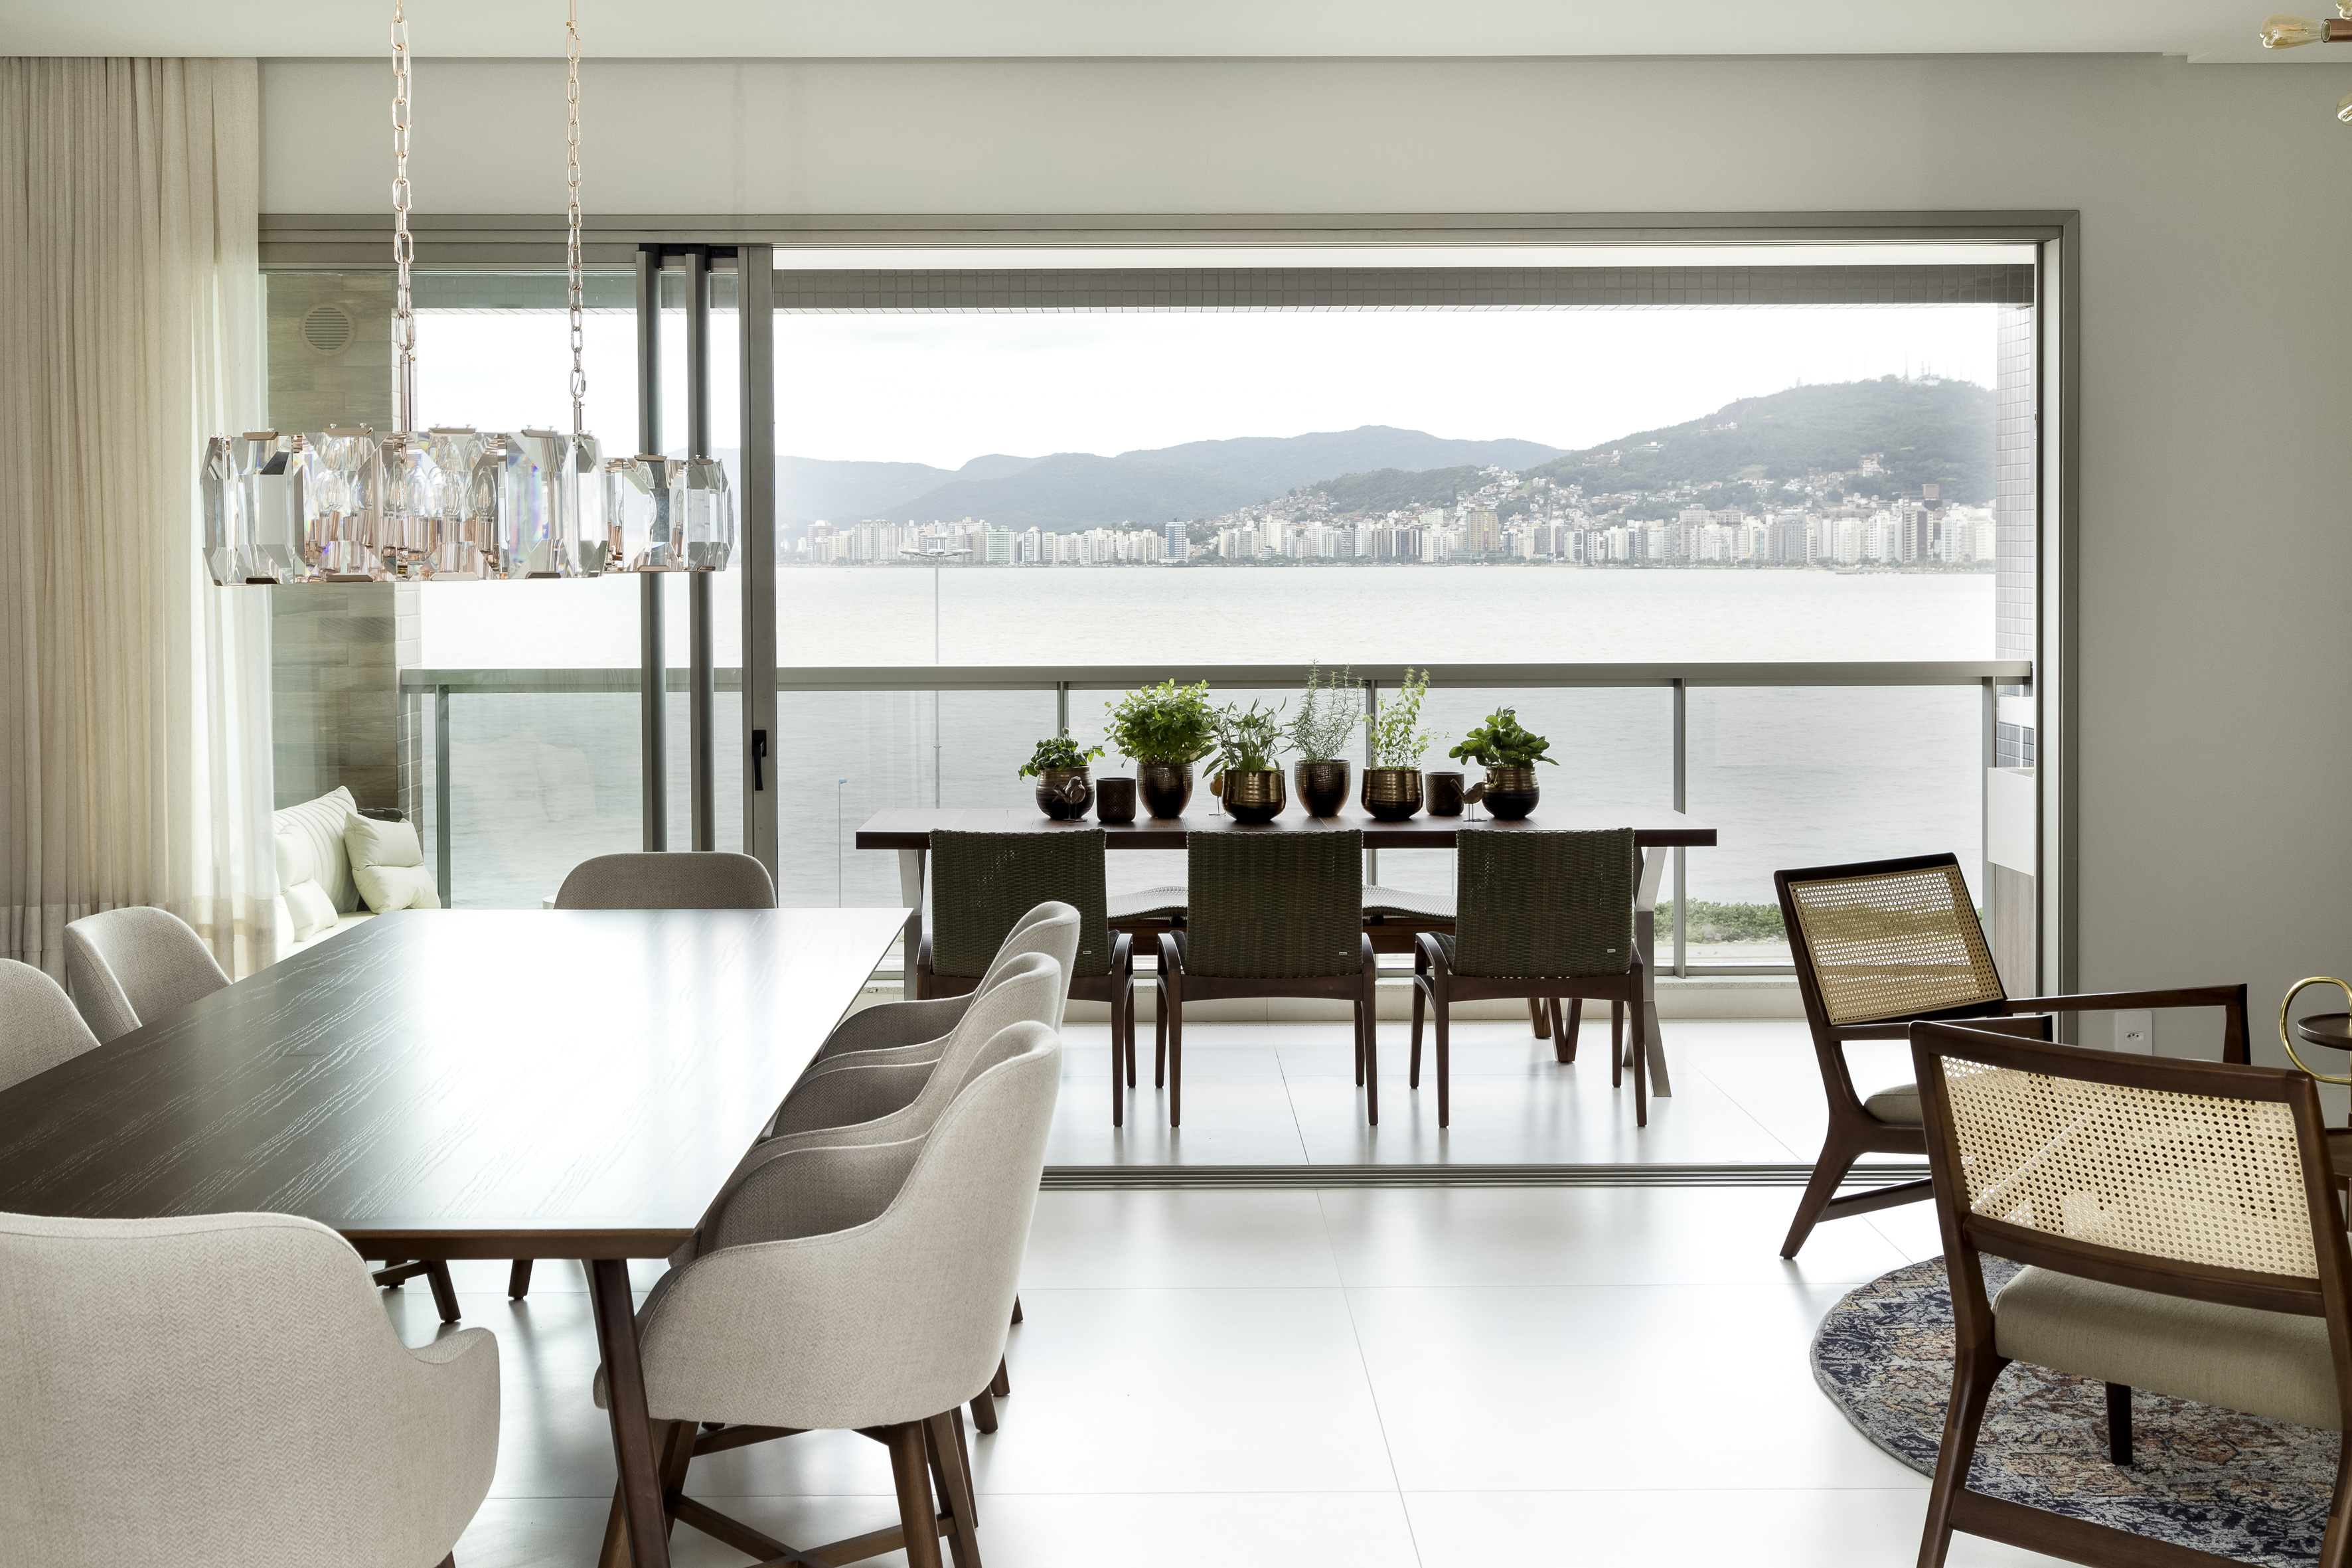 Apartamento em Florianópolis com décor neutro que valoriza a vista